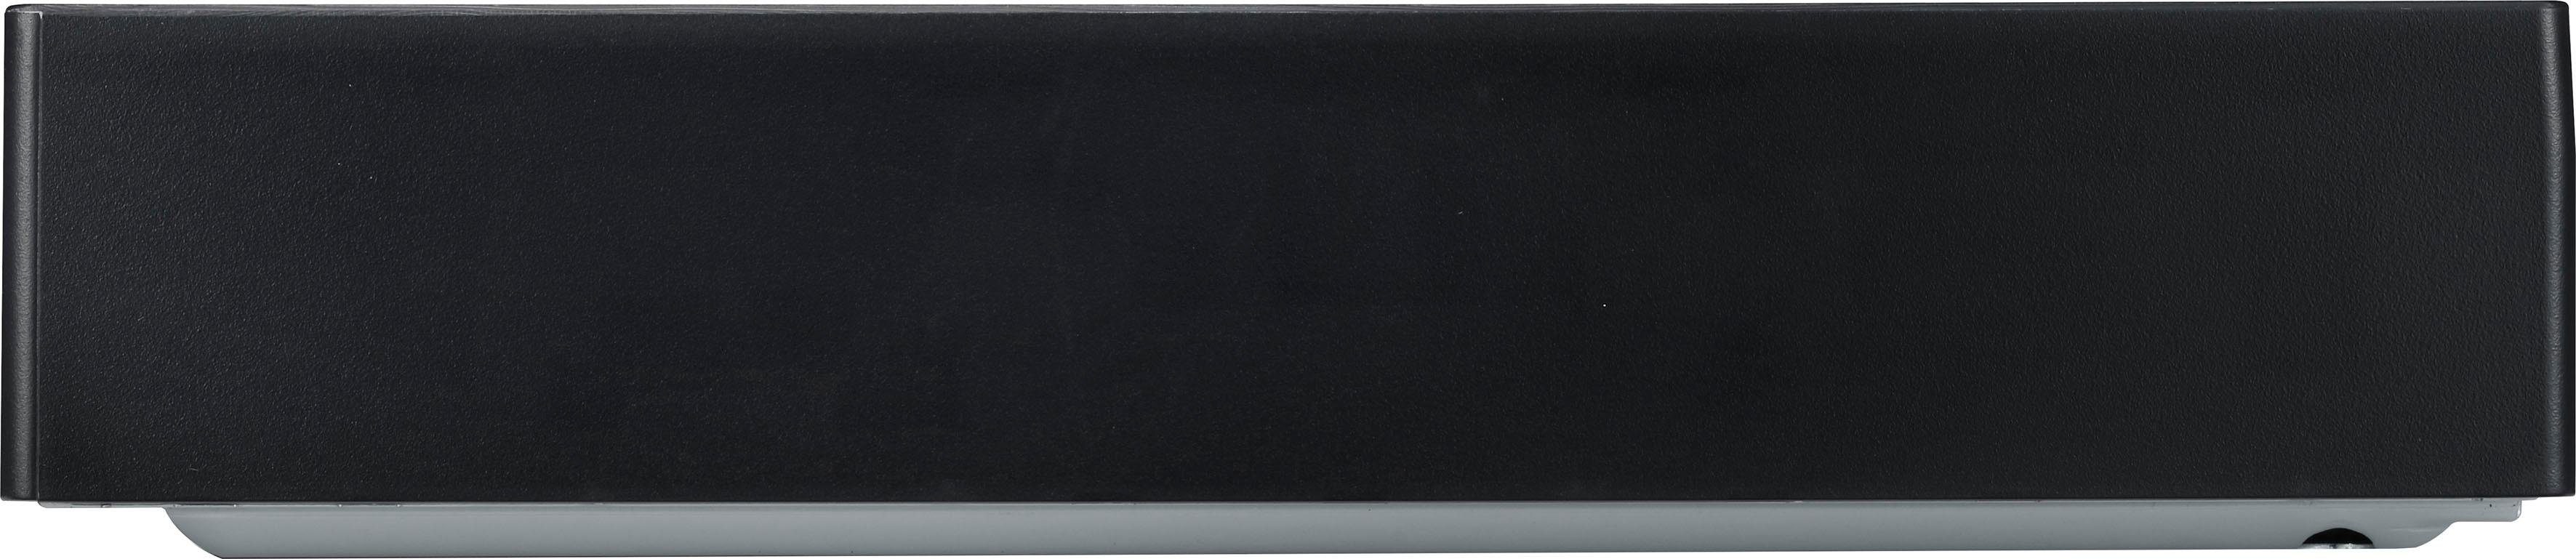 LG UBK90 Blu-ray-Player (4k Ultra WLAN, HD, 4K Upscaling)